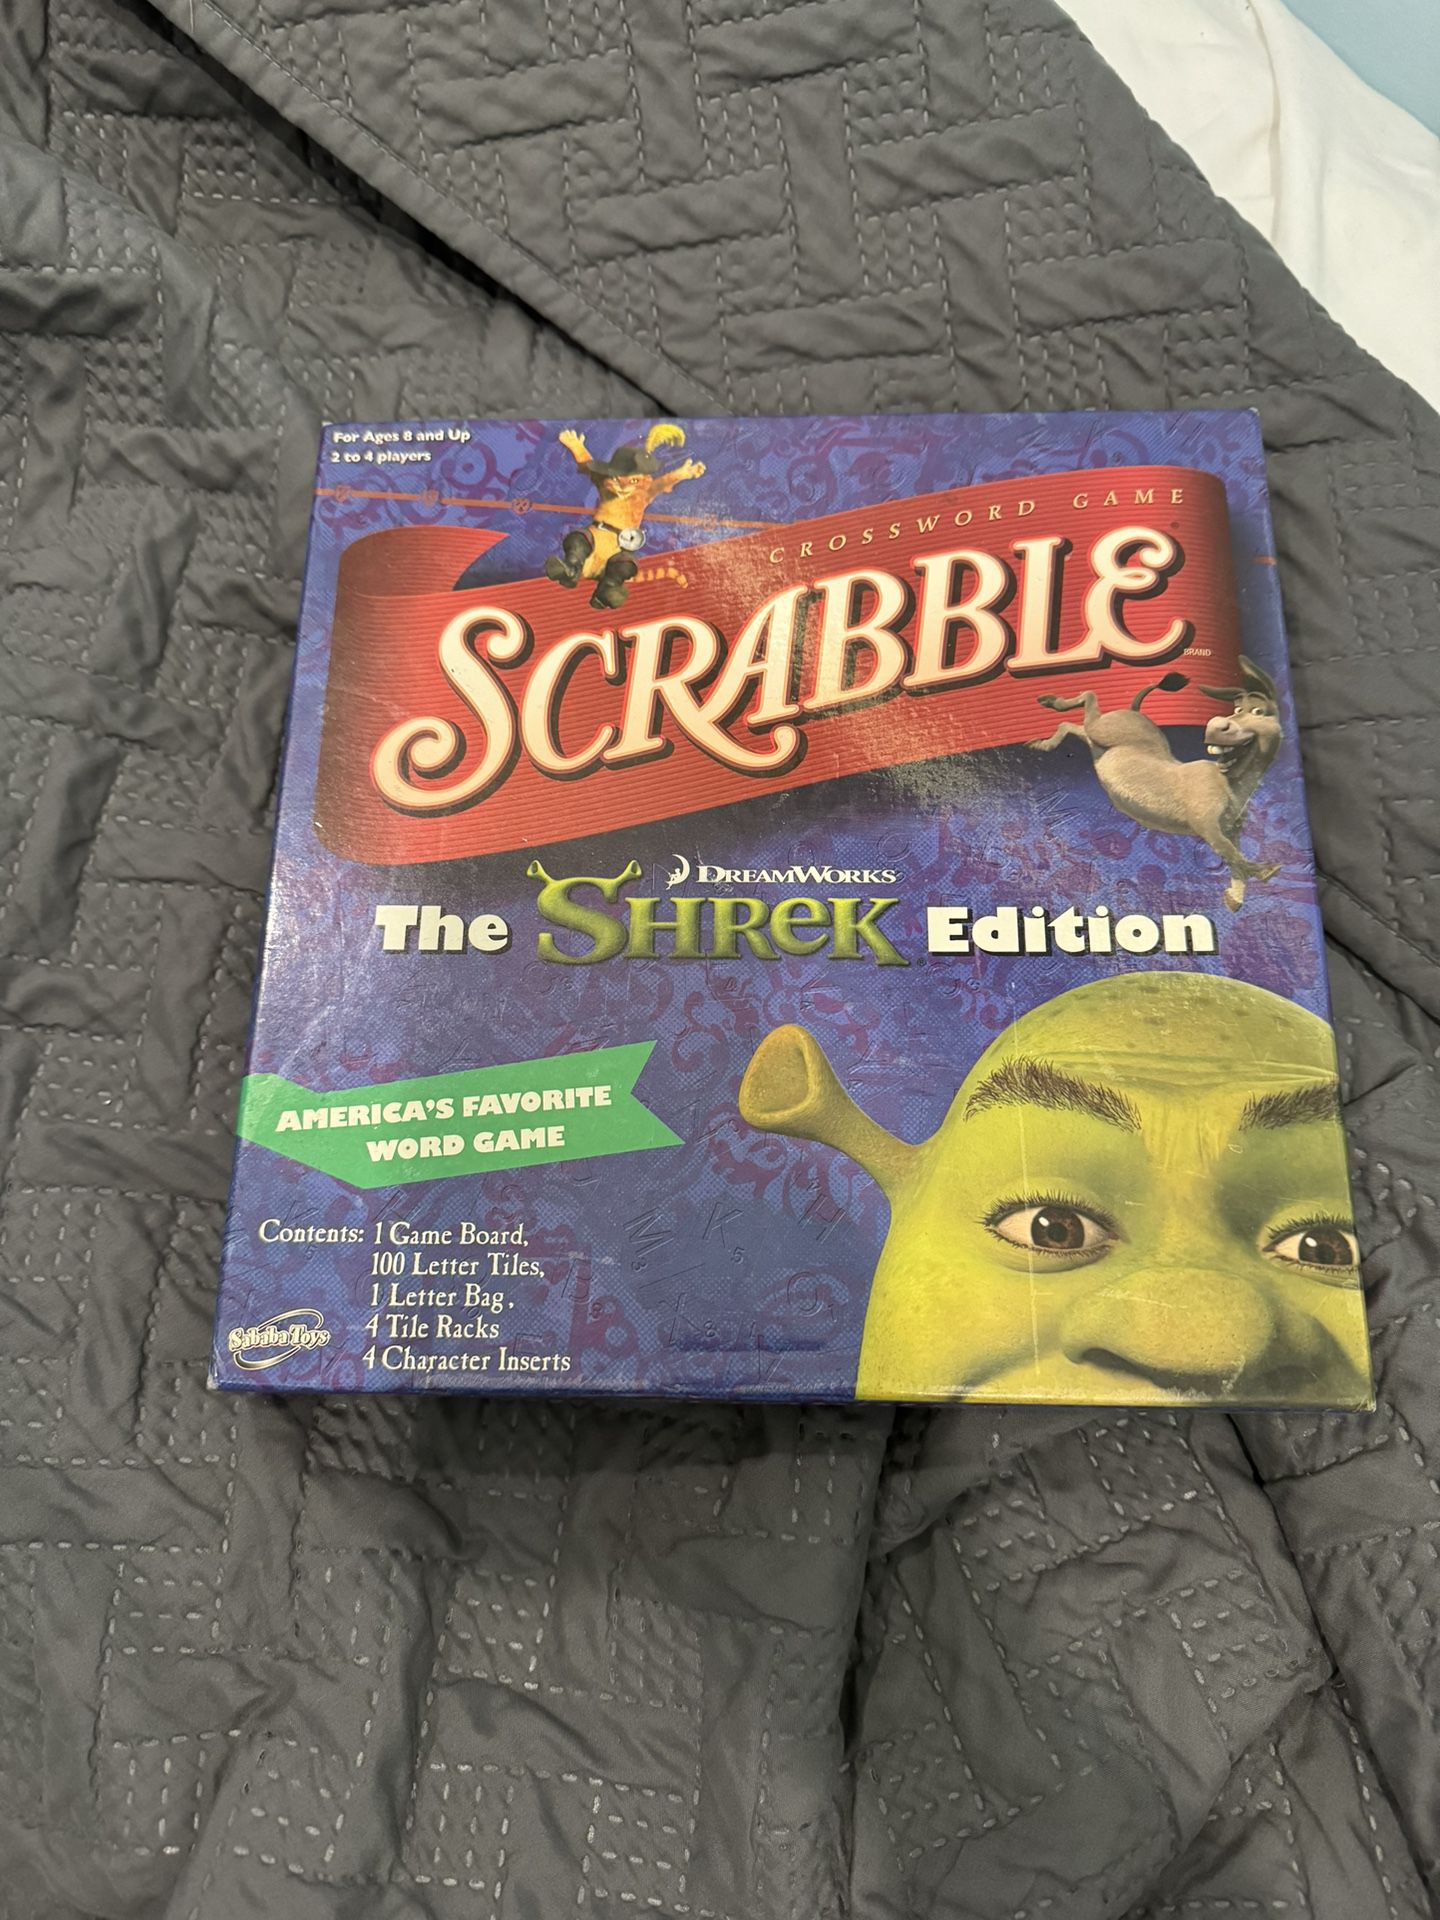 Shrek Scrabble